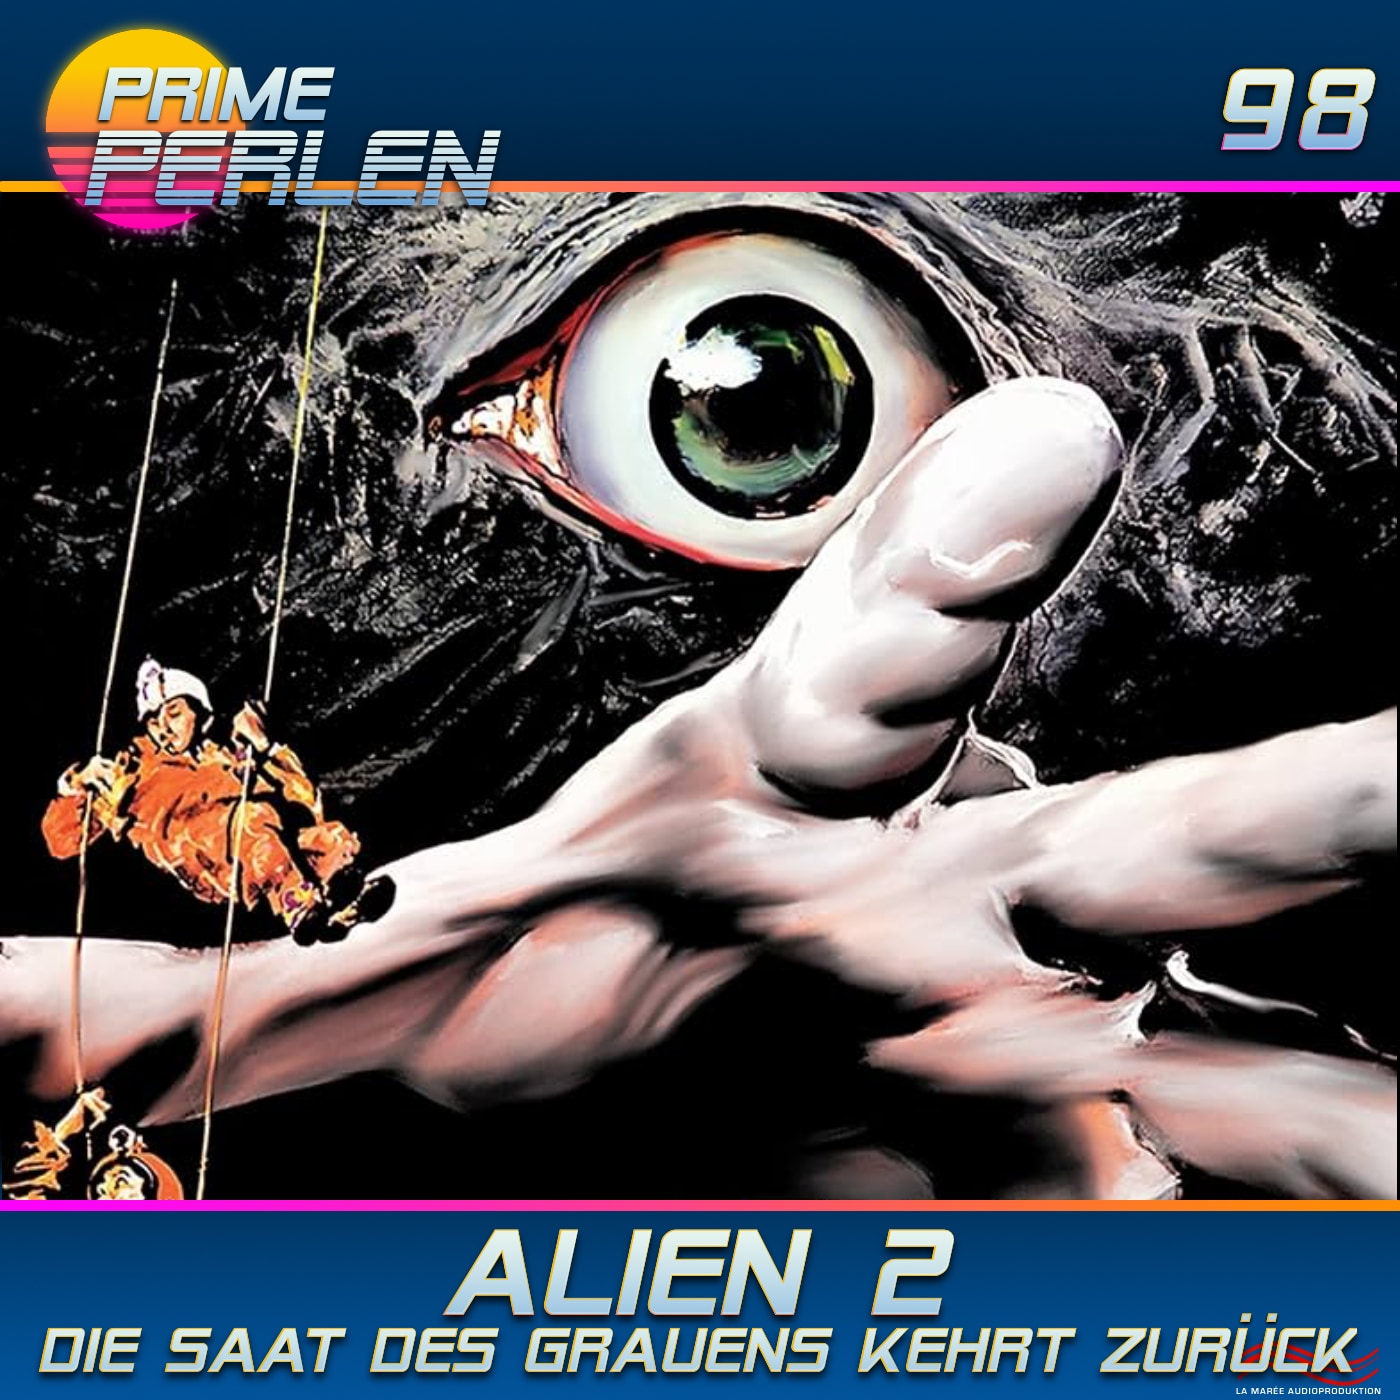 Prime Perlen #98 – Alien 2 - Die Saat des Grauens kehrt zurück